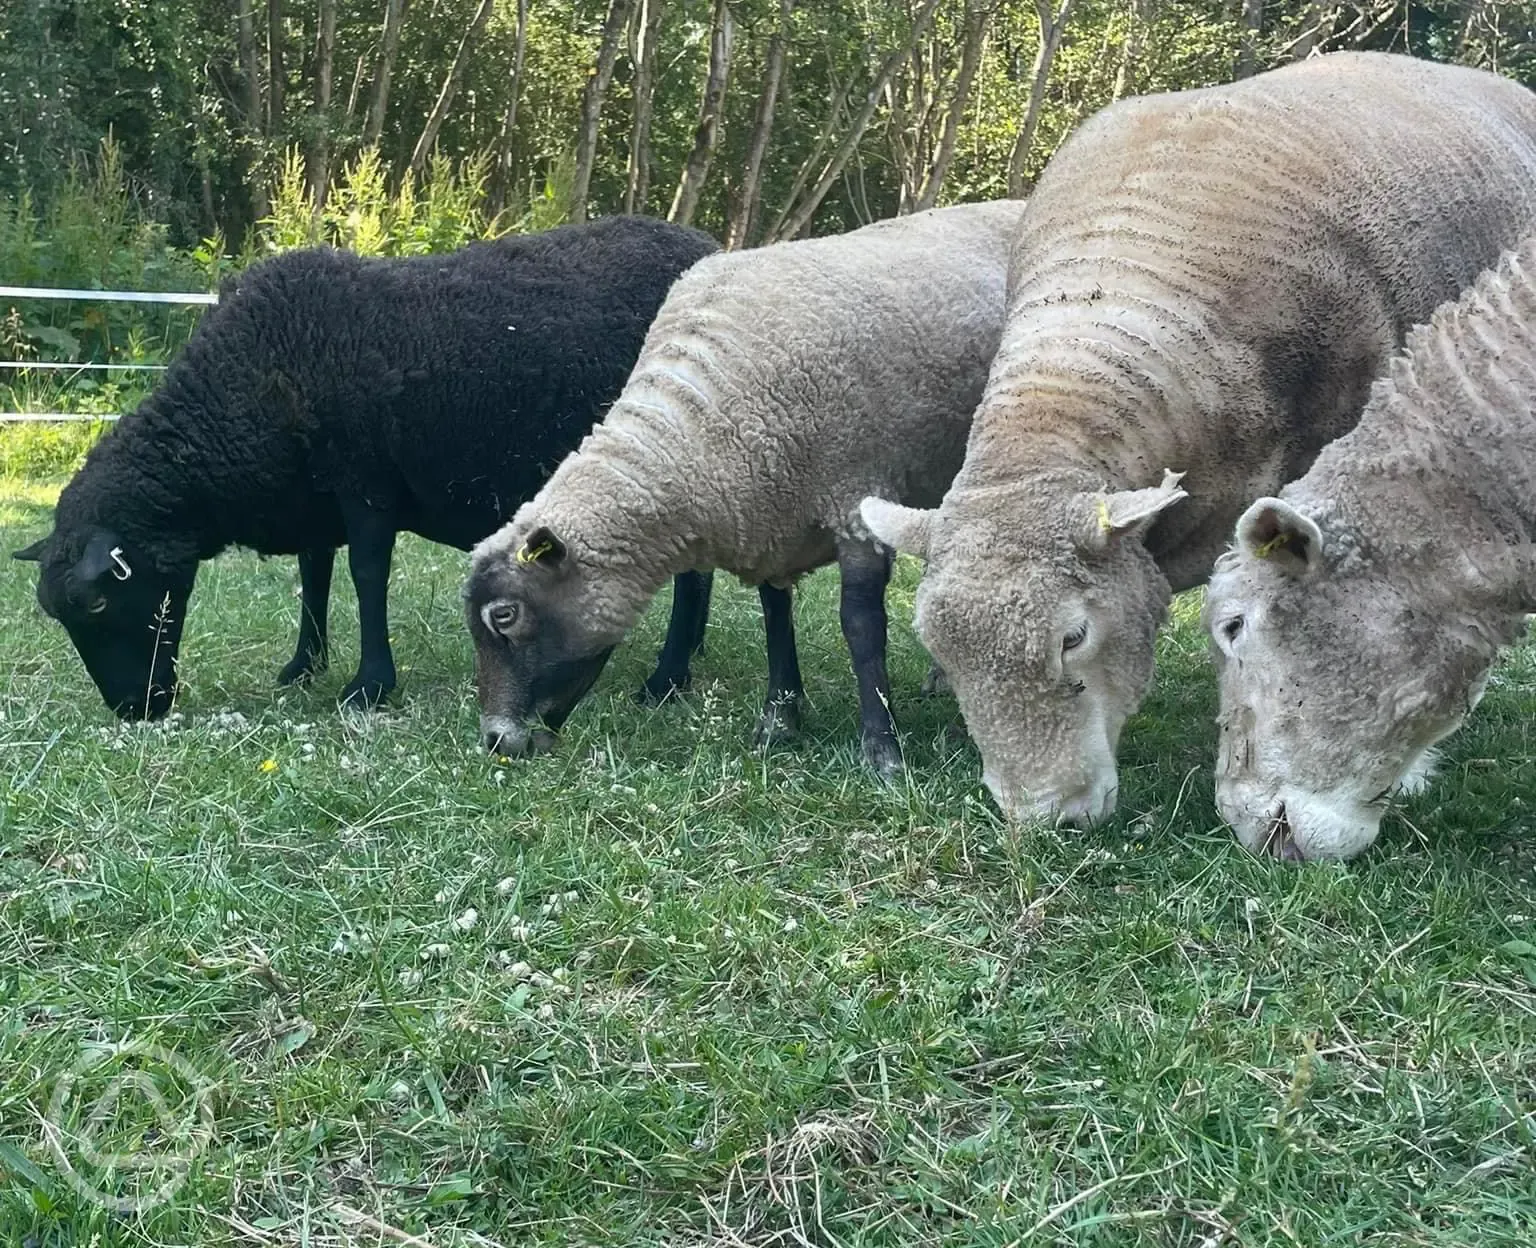 Petting farm sheep